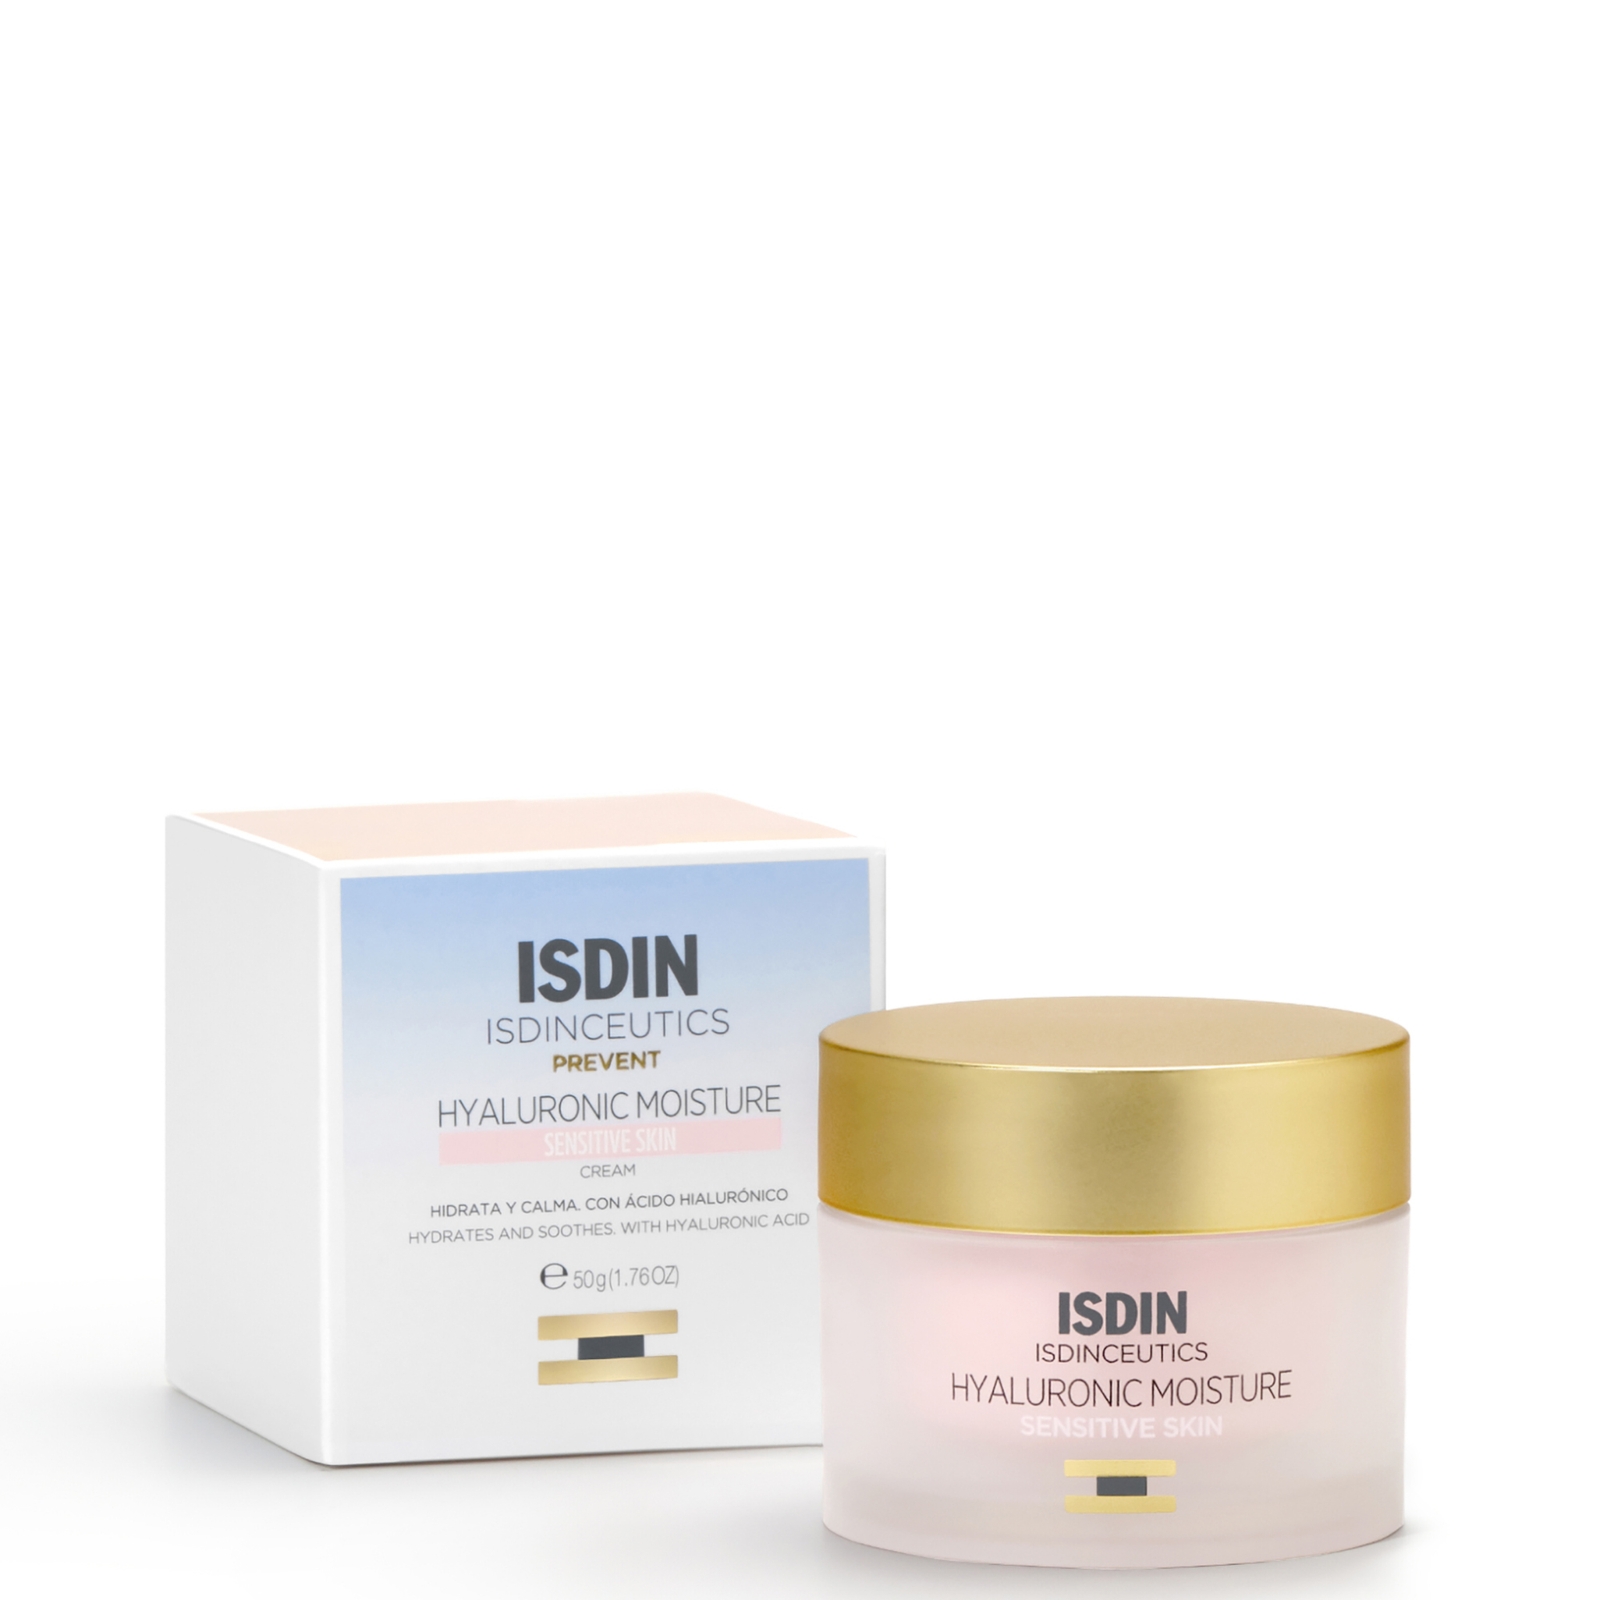 Isdin Ceutics Hyaluronic Moisture Hydrating Face Moisturiser For Sensitive Skin 50ml In White